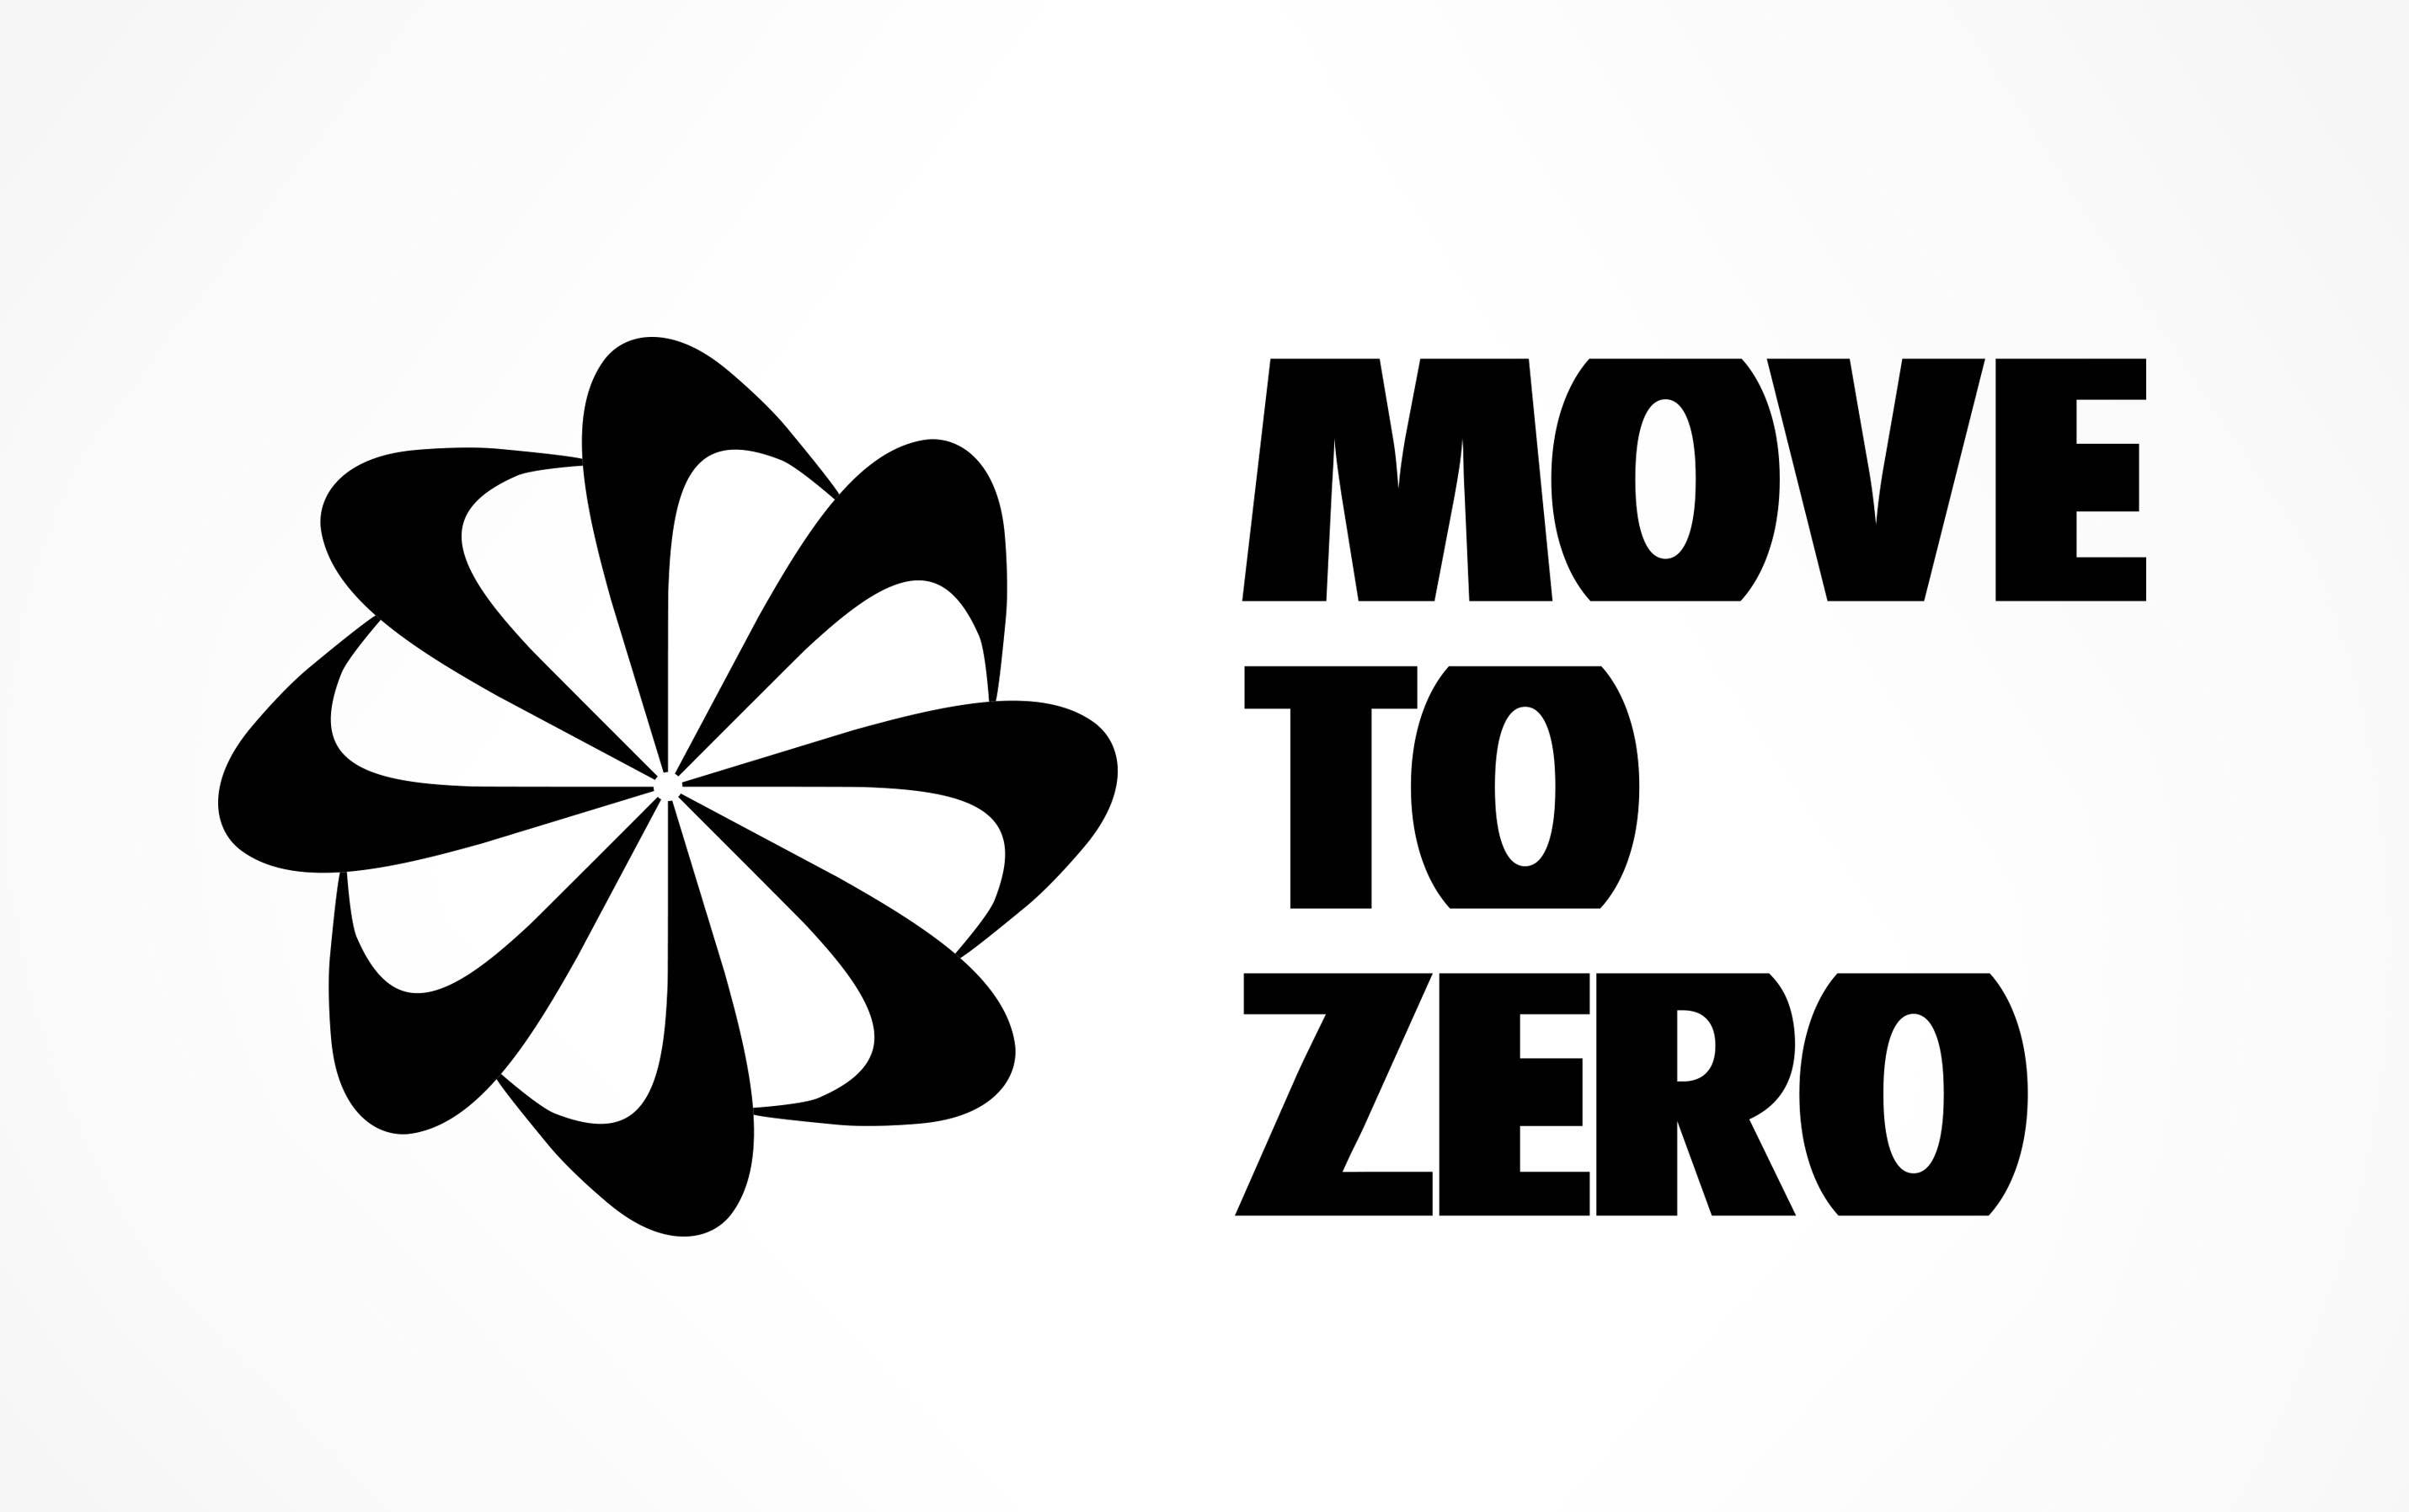 Nike Move to Zero